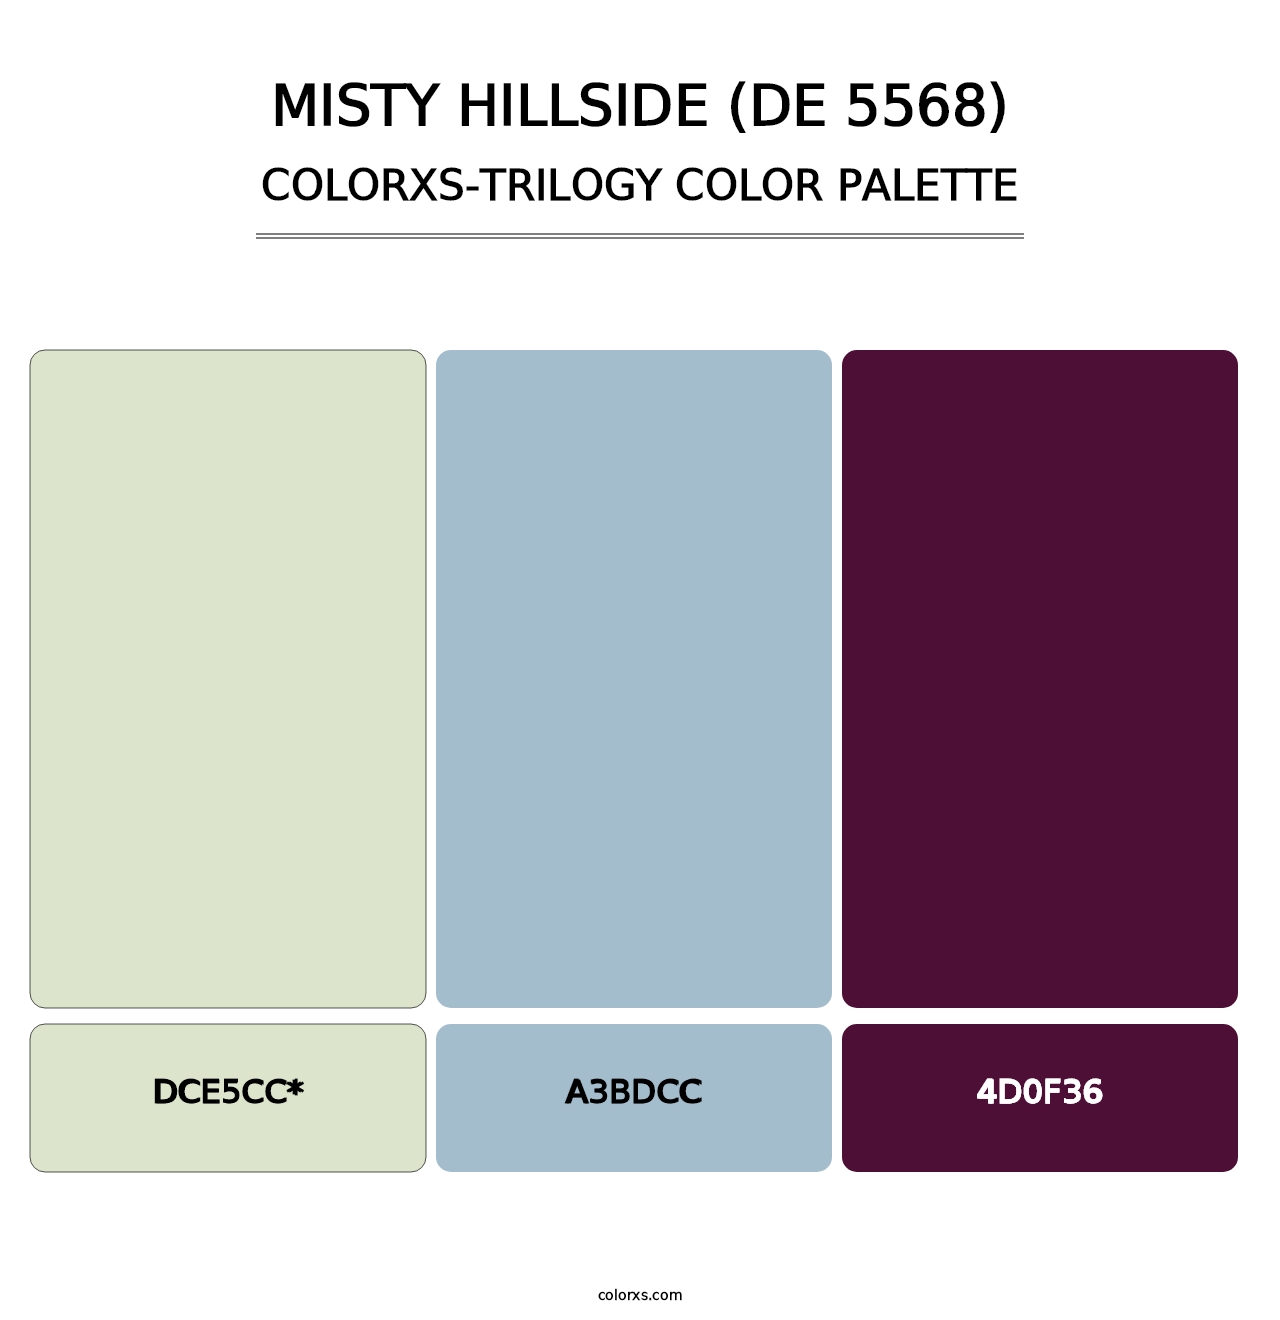 Misty Hillside (DE 5568) - Colorxs Trilogy Palette